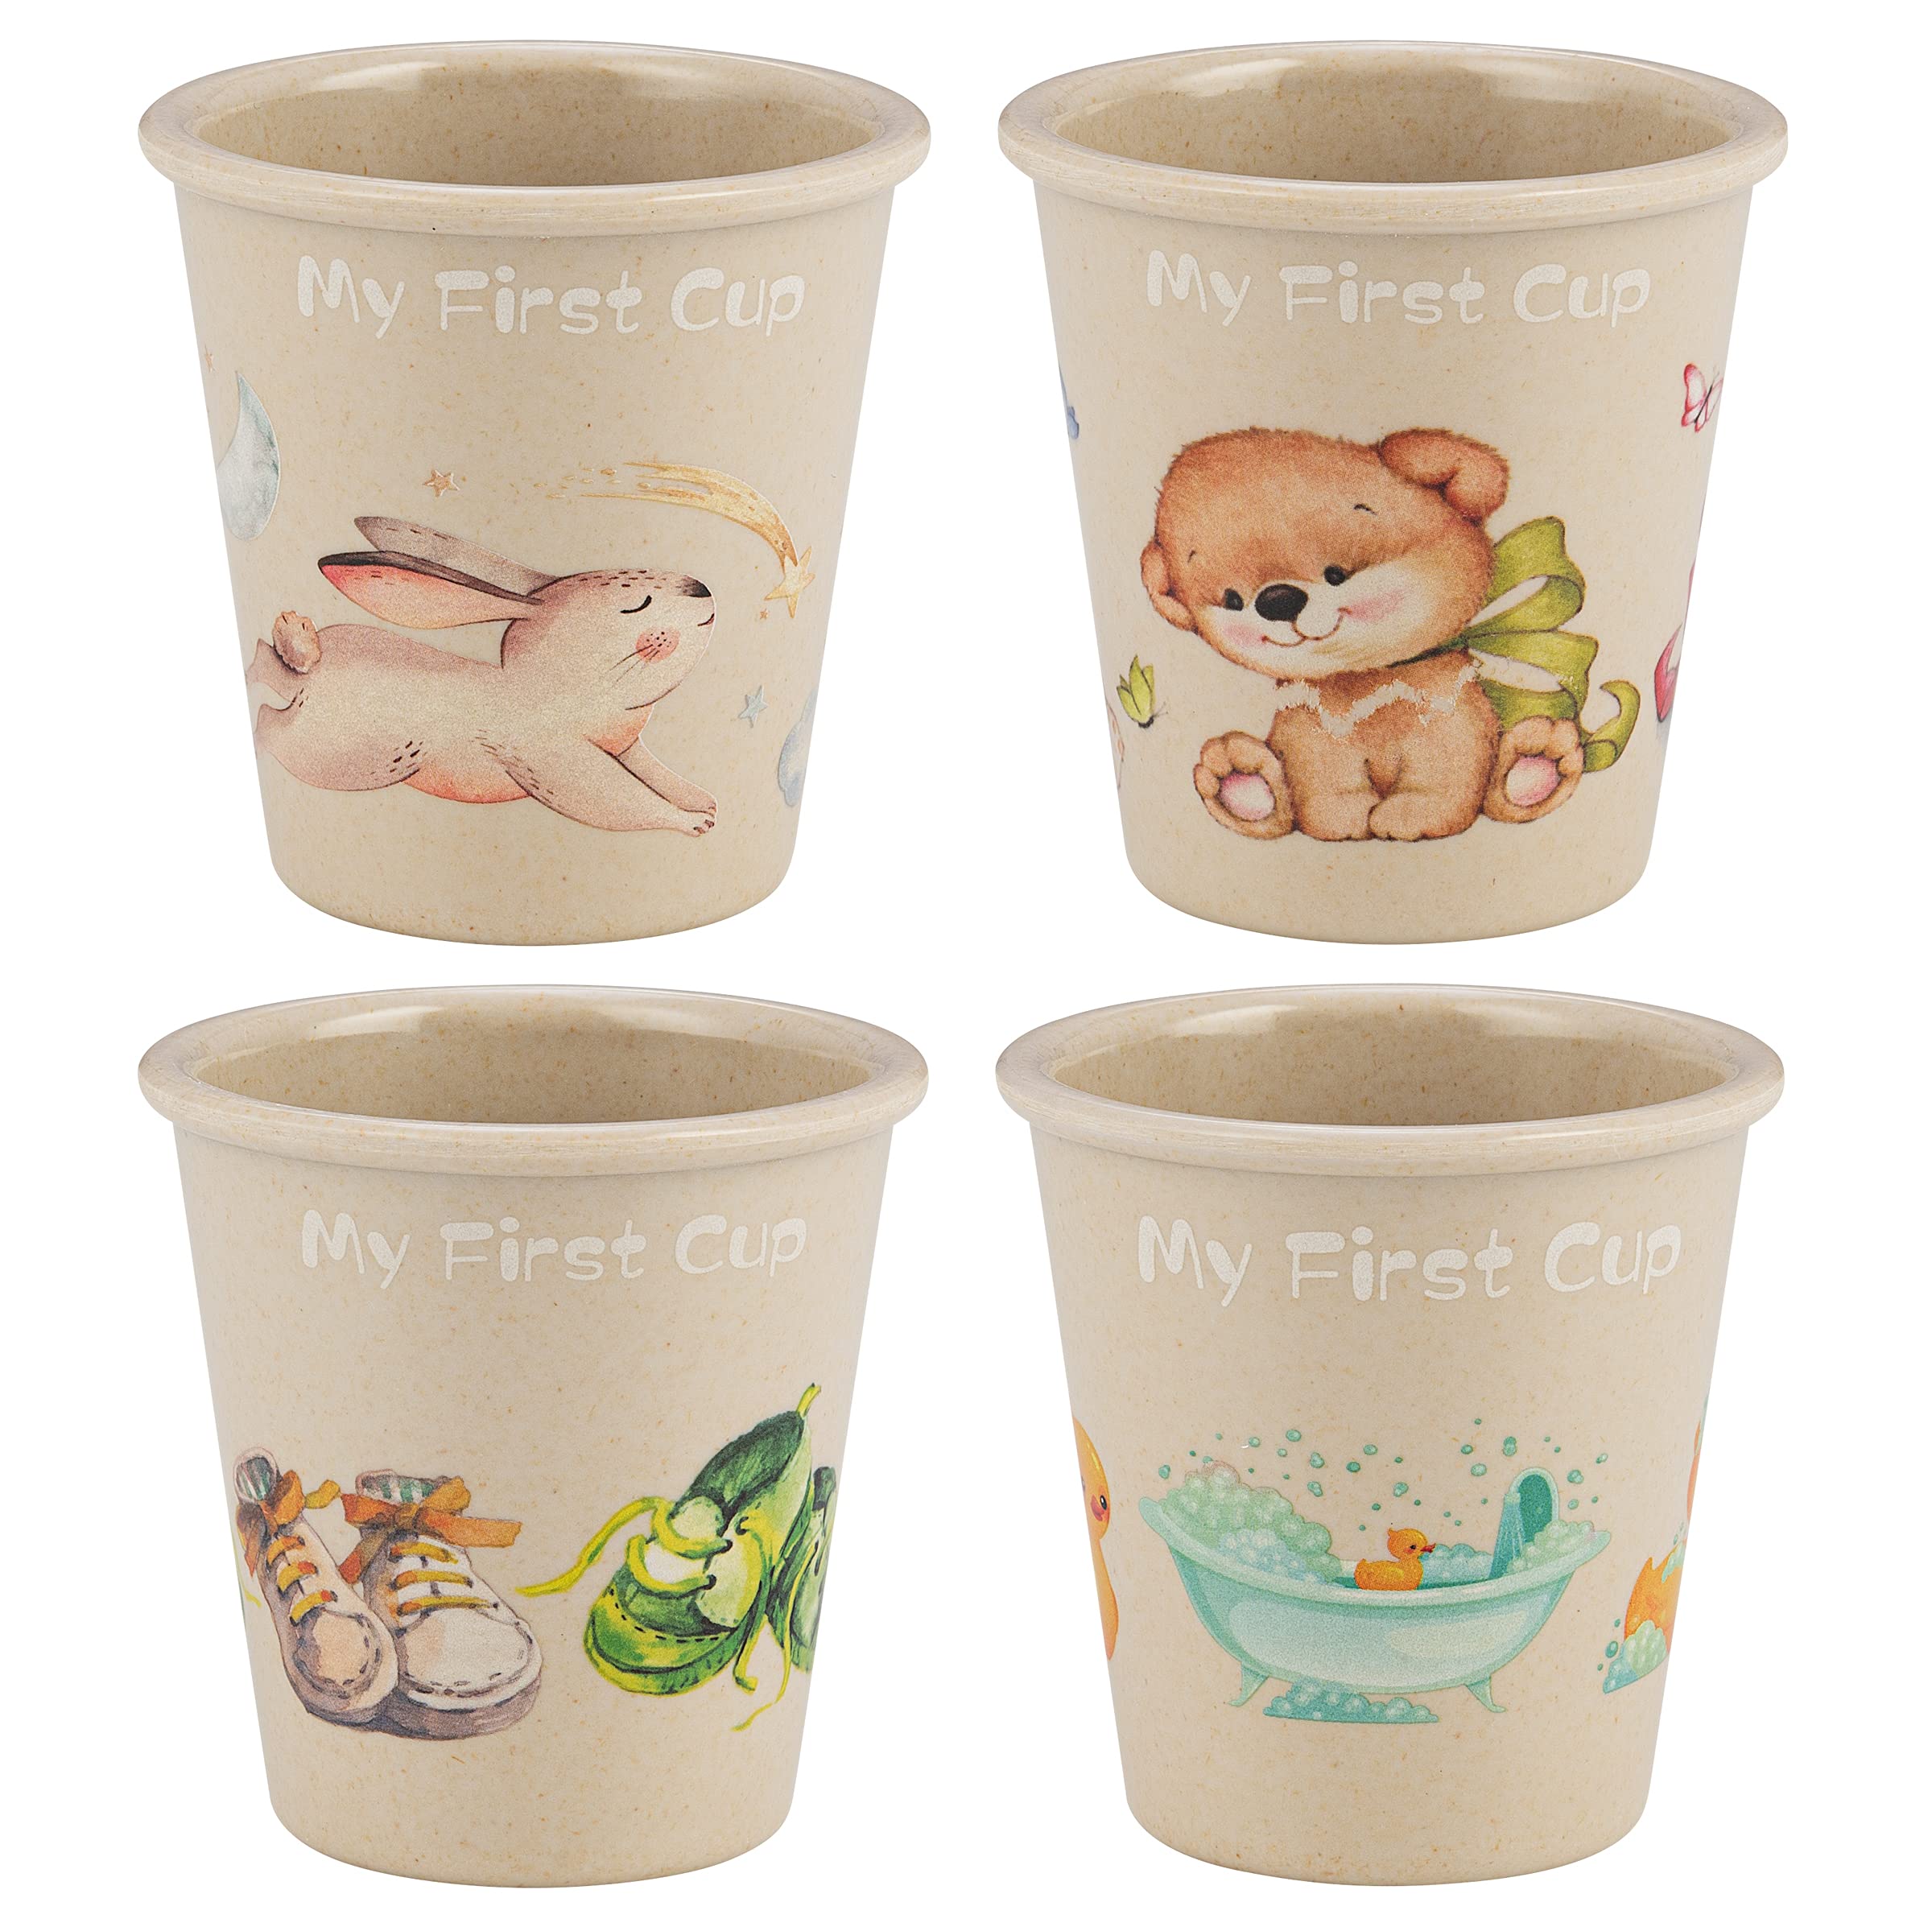  Cups For Preschoolers